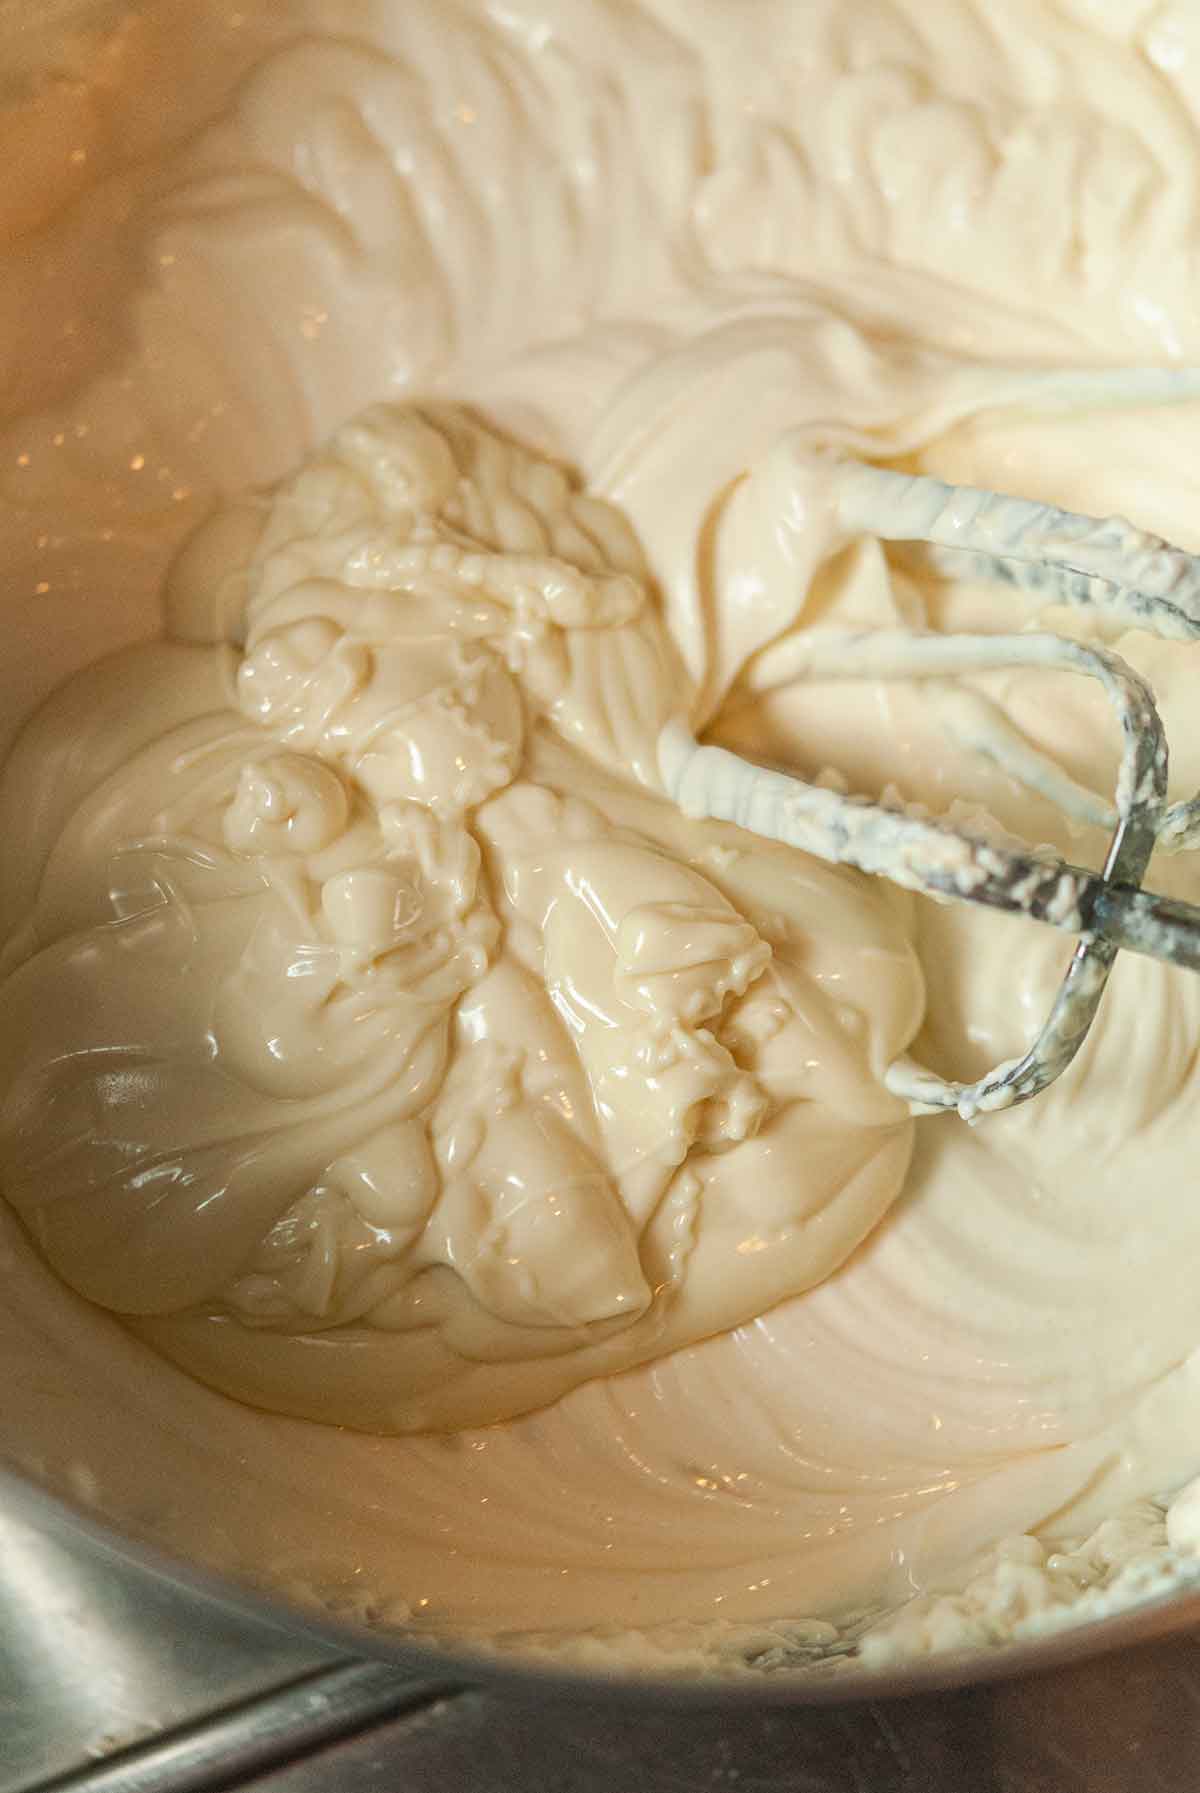 White Ceramic Ice Cream Cheese Chocolate Melting Cup - Temu